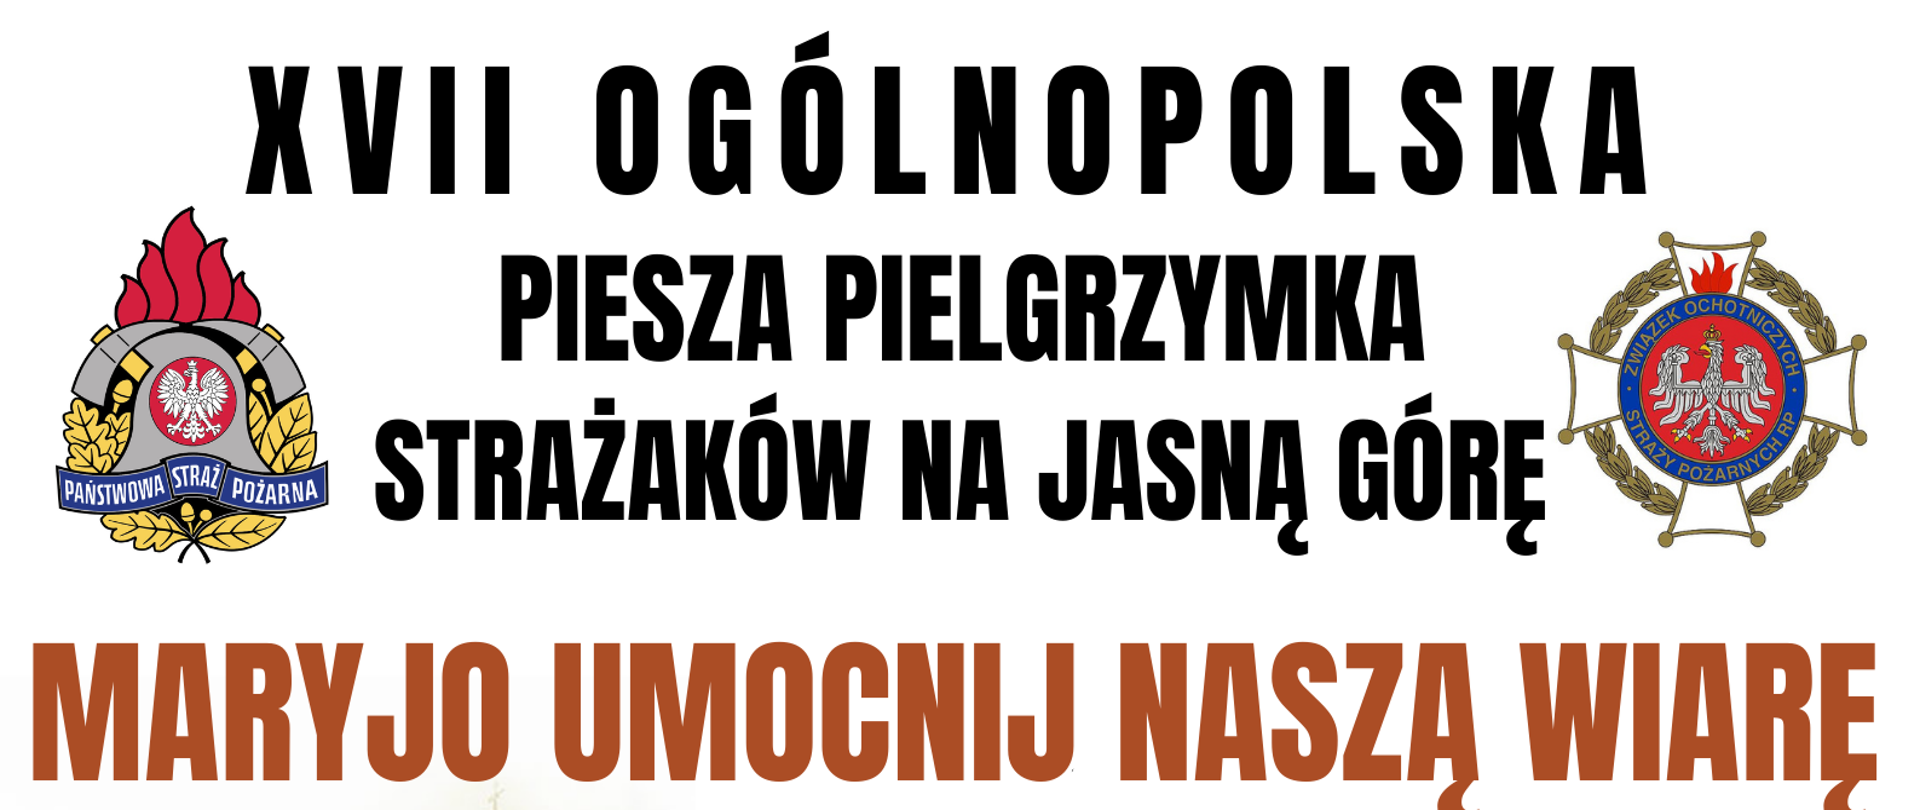 Plakat XVII Ogólnopolska Piesza Pielgrzymka Strażaków na Jasną Górę MARYJO UMOCNIJ NASZĄ WIARĘ 5-14 sierpnia 2023 r.